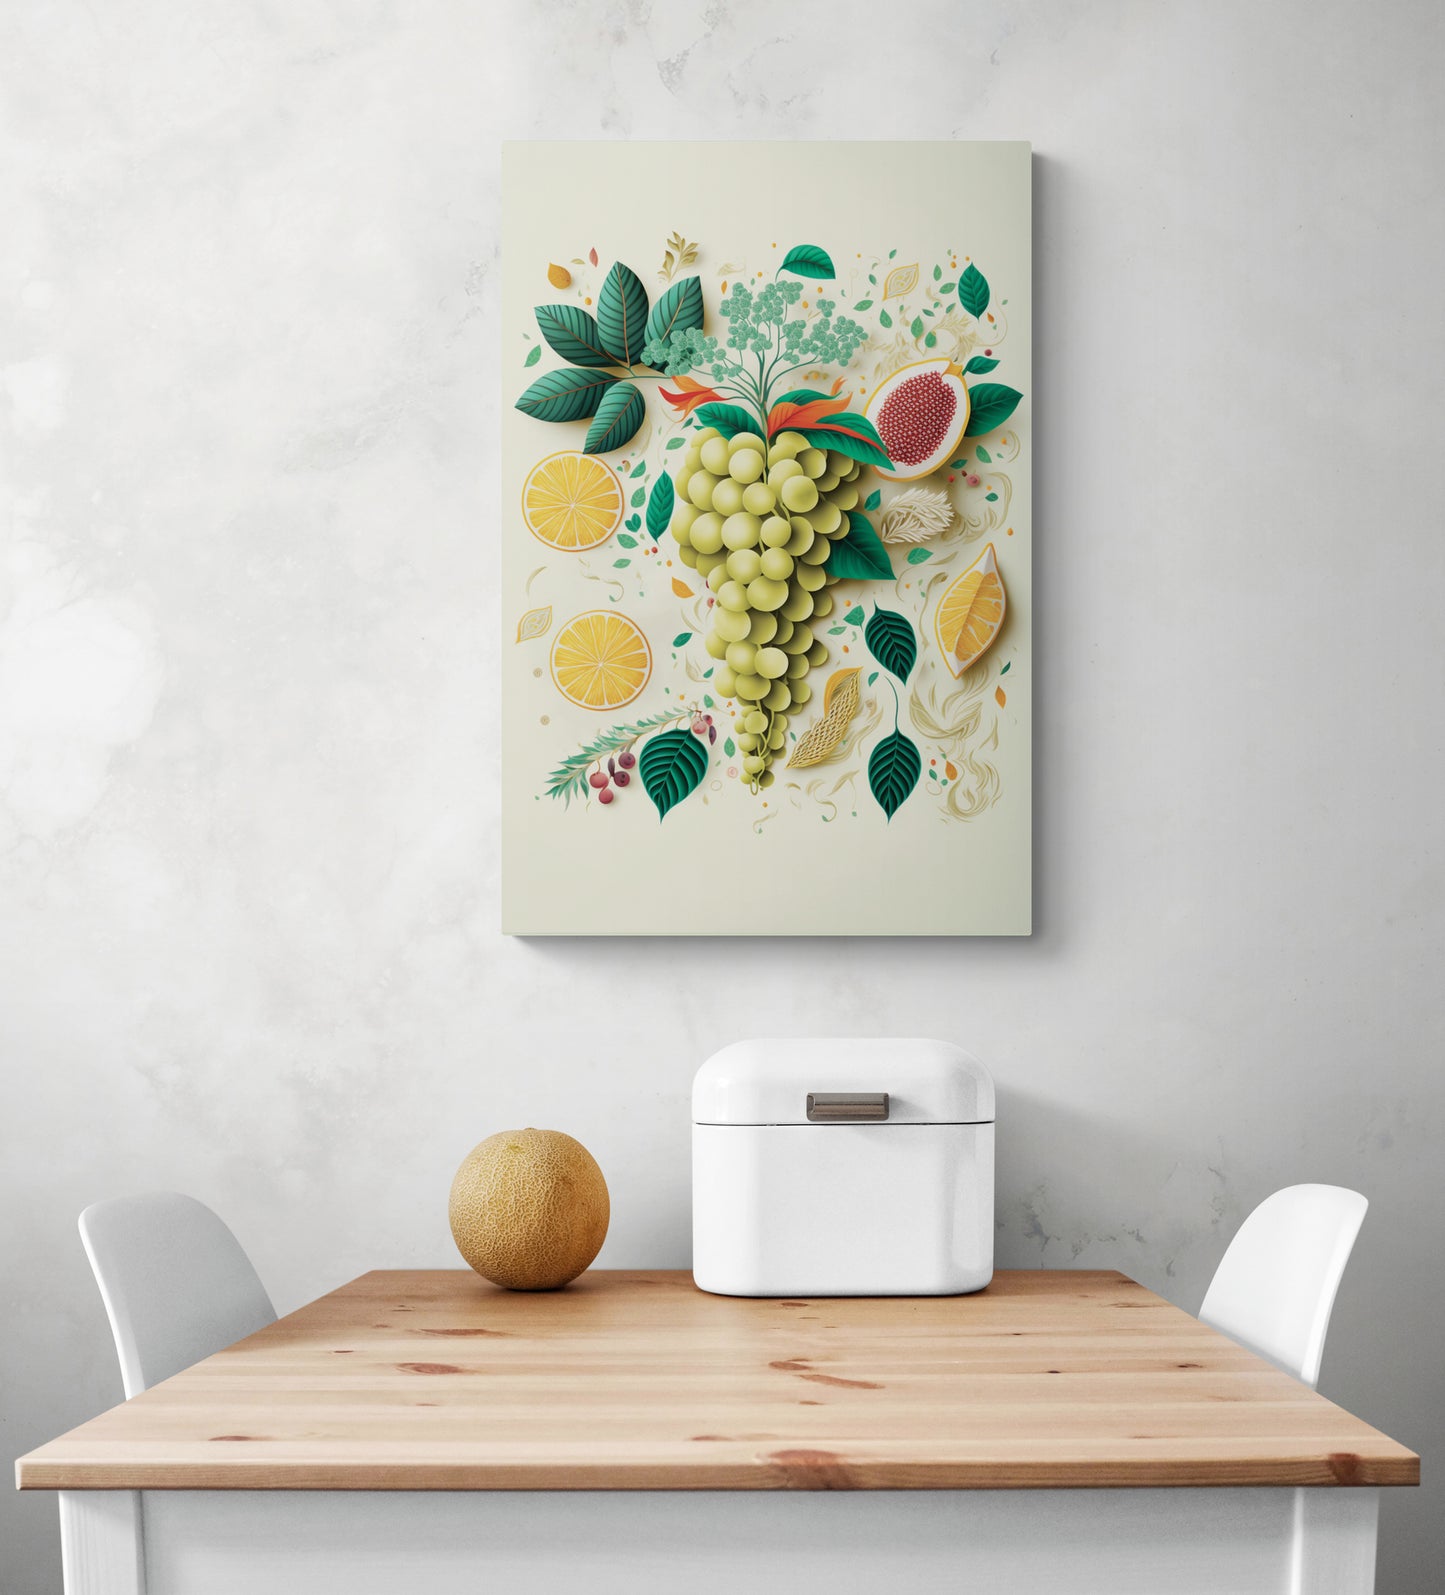 Un tableau cuisine déco est accroche au milieu d'un mur de blanc. Sur ce tableau une grappe de raisin vert entouré de feuille verte et de tranche de citron. Ce tableau apporte de la fraîcheur et la palette de couleur et douce. Au dessous une table de repas en pin et deux chaises blanches face à face